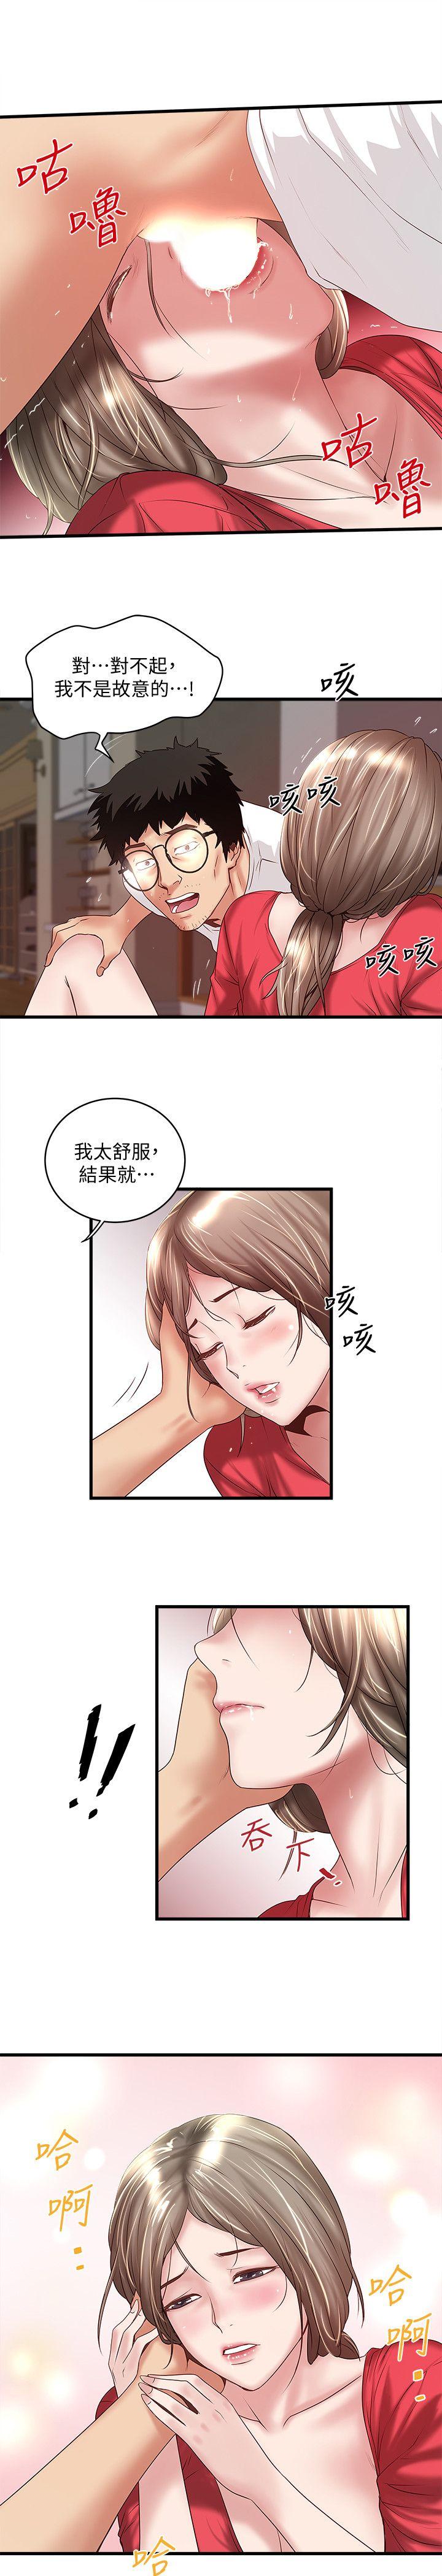 韩国污漫画 下女,初希 第32话-你为什么对我这么好? 14